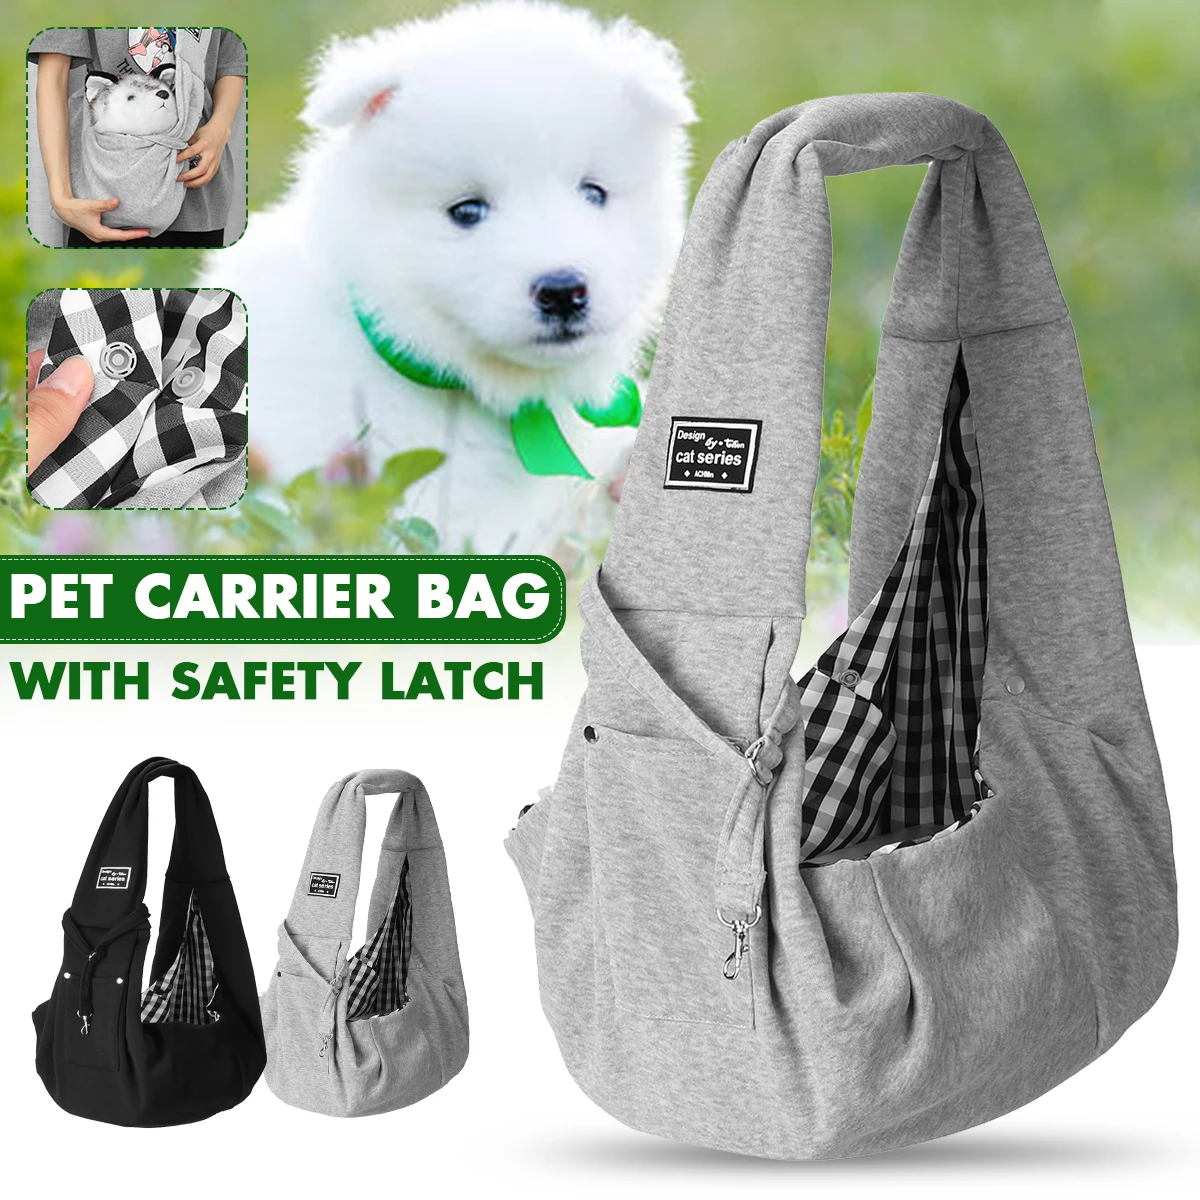 

Сумка-переноска для домашних питомцев, Хлопковая сумка на плечо для путешествий с кошками и щенками, удобная сумка-слинг